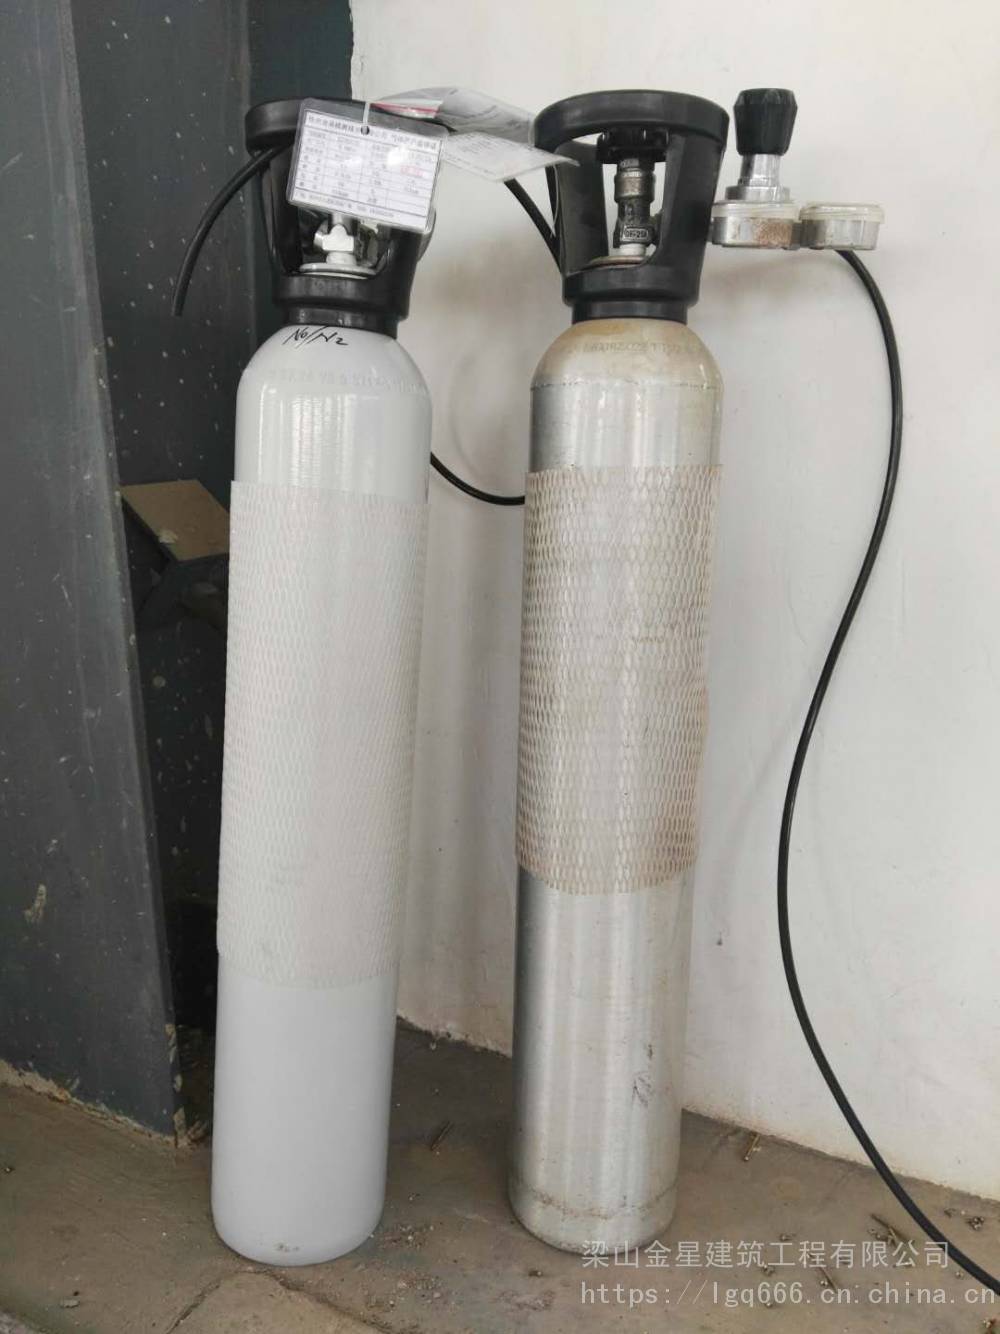 二手标气瓶回收二手液氮罐回收回收二手8升铝合金标准气瓶